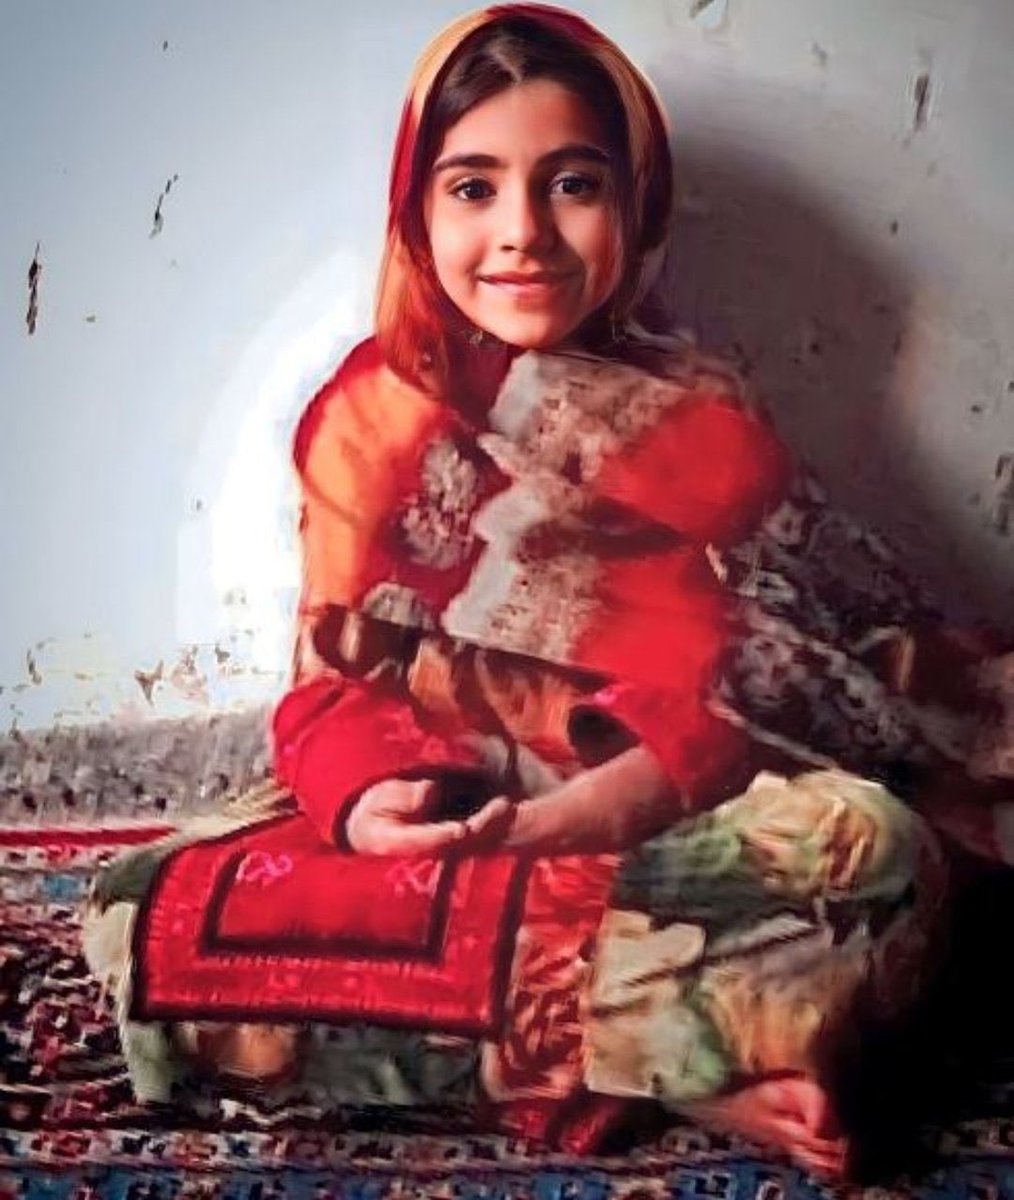 برای هستی نارویی دخترک زیبای بلوچ کە توسط جنایتکاران خامنەای در جمعە خونین زندان کشتە شد. 🥀😞🥀😞🥀😞
#سپاه_تروریستی_پاسداران 
#IRGCterrorists